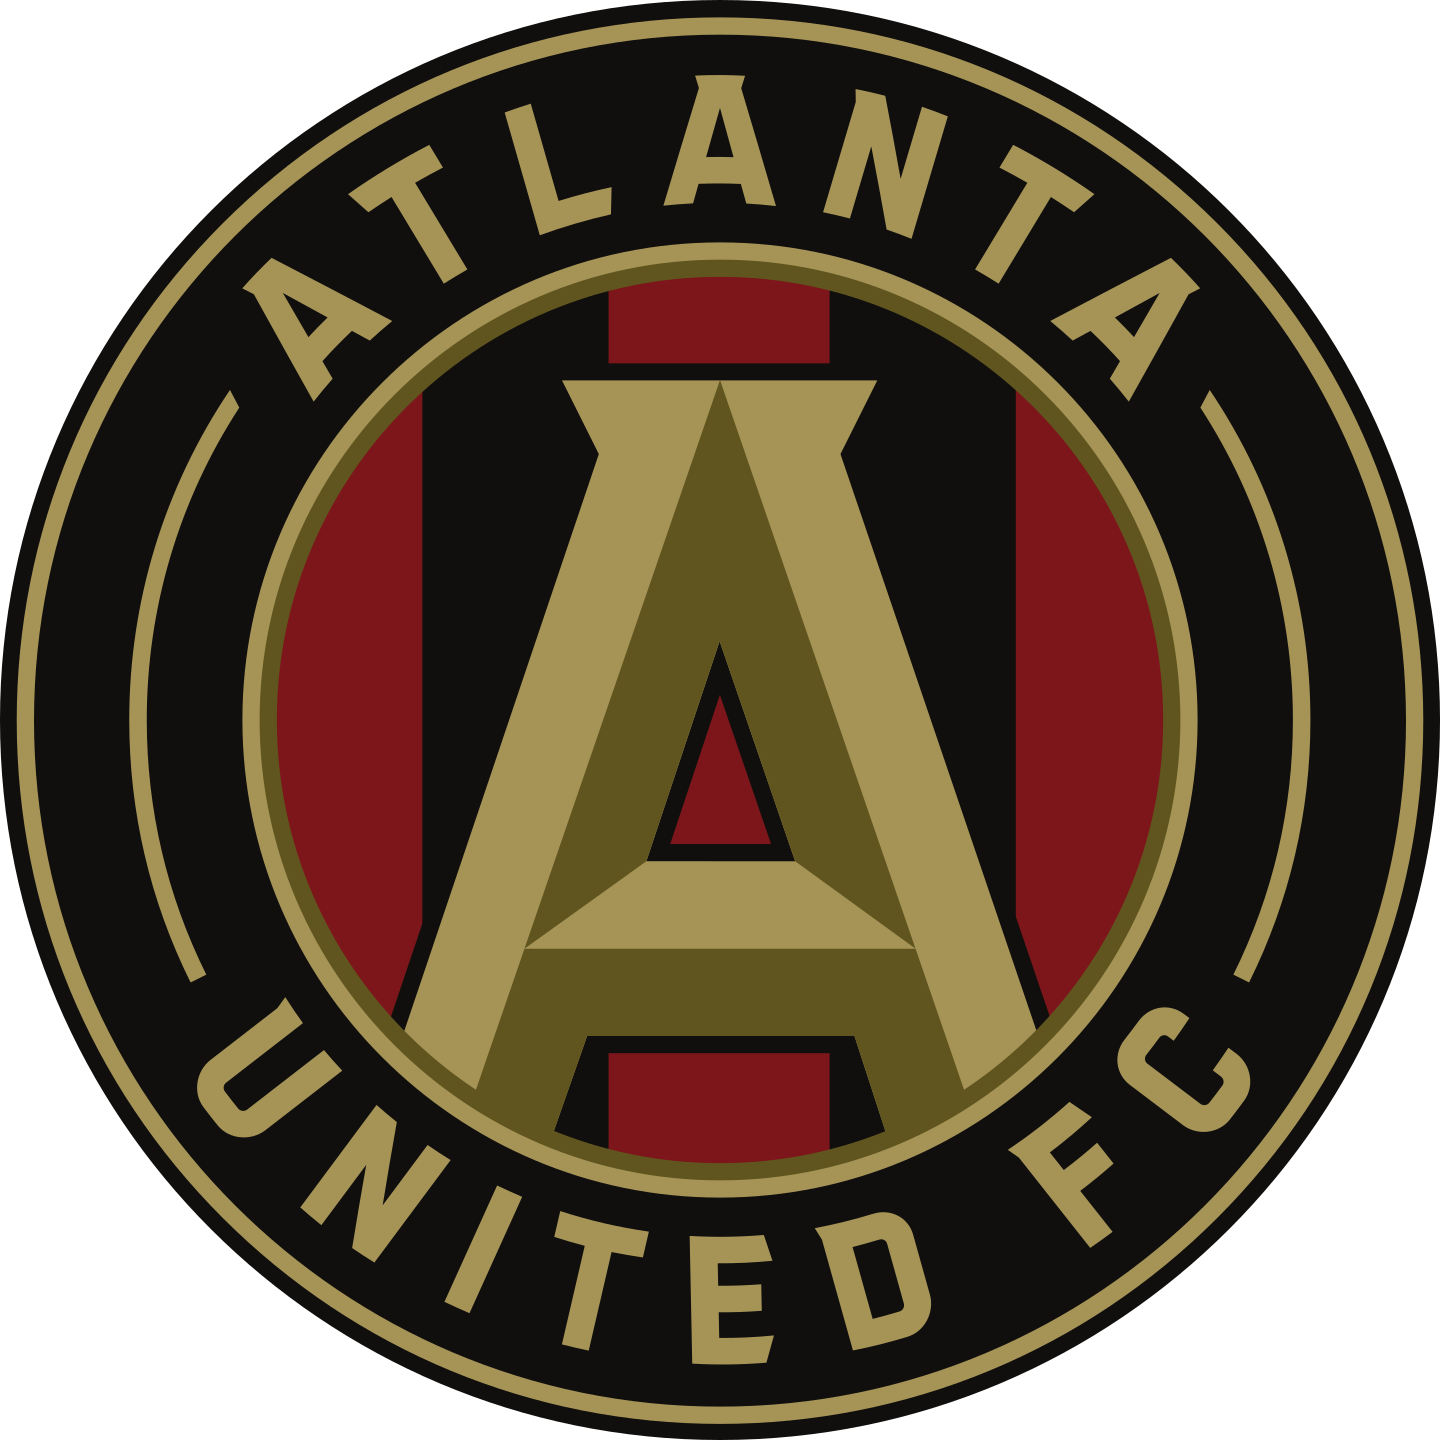 atlanta united fc logo 2 - Atlanta United FC Logo